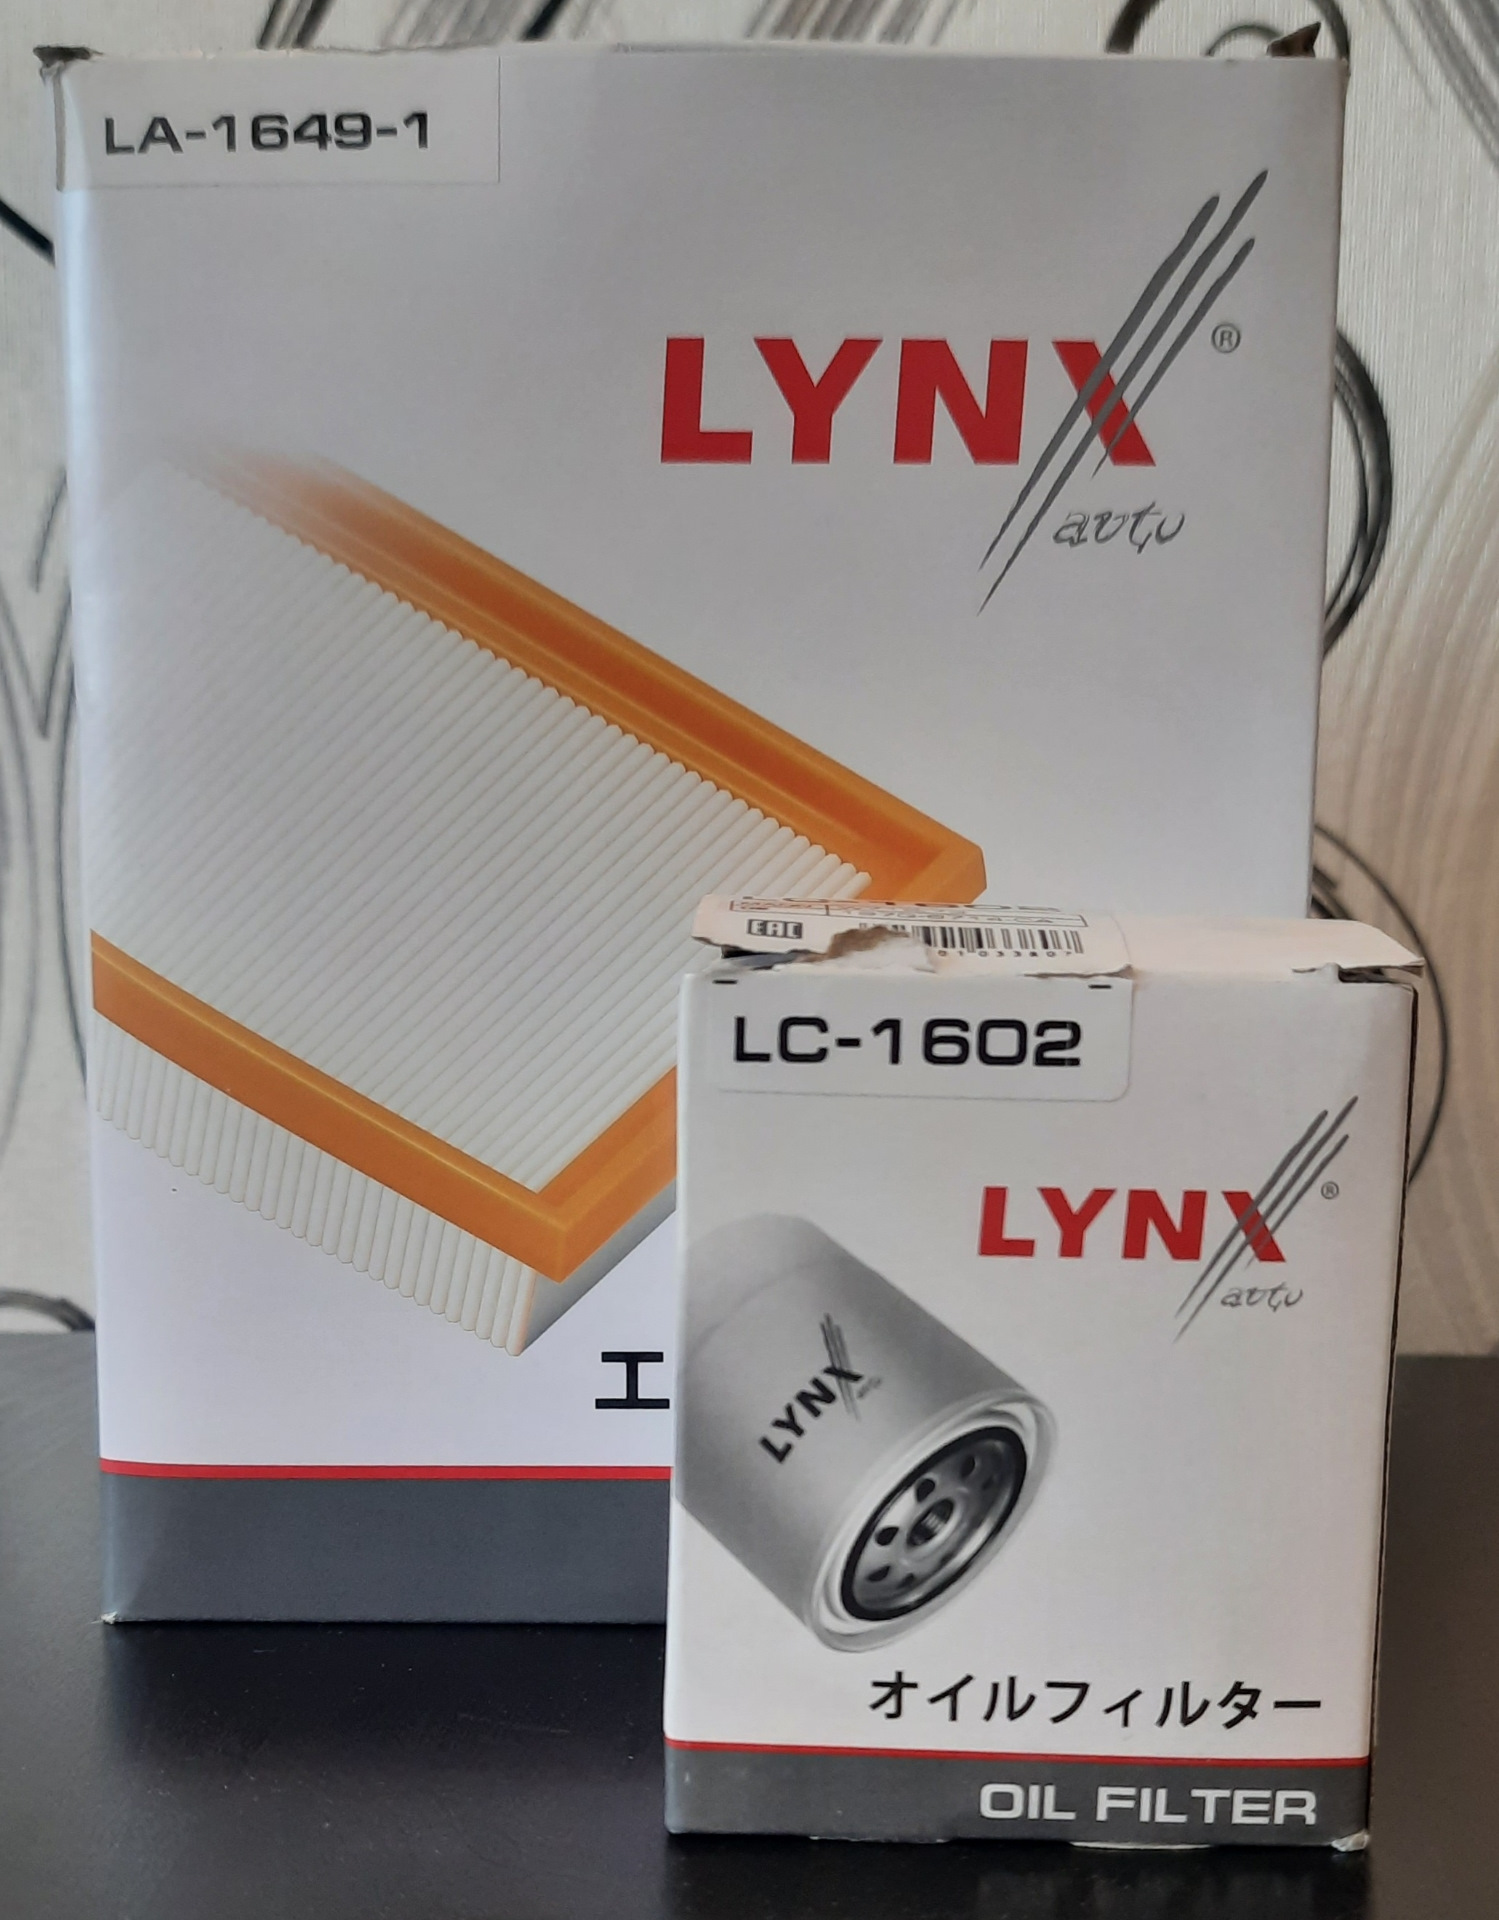 La16491. Vs1249 Lynx отзывы. Производитель lynx отзывы